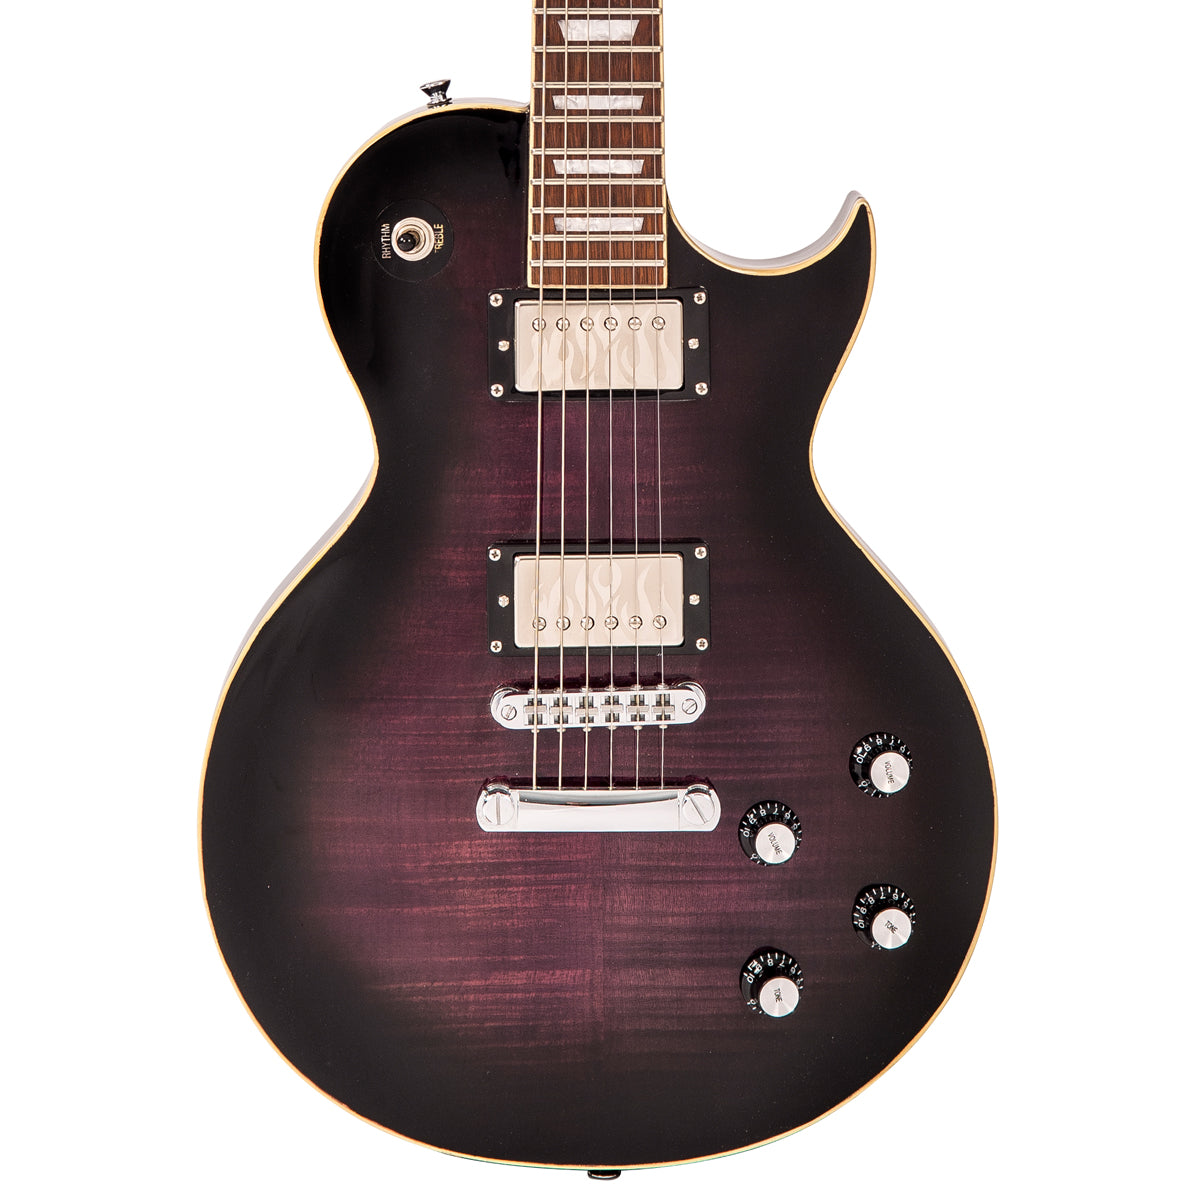 SOLD - Vintage V100 ProShop Unique ~ Flamed Purple Burst, Electric Guitars for sale at Richards Guitars.